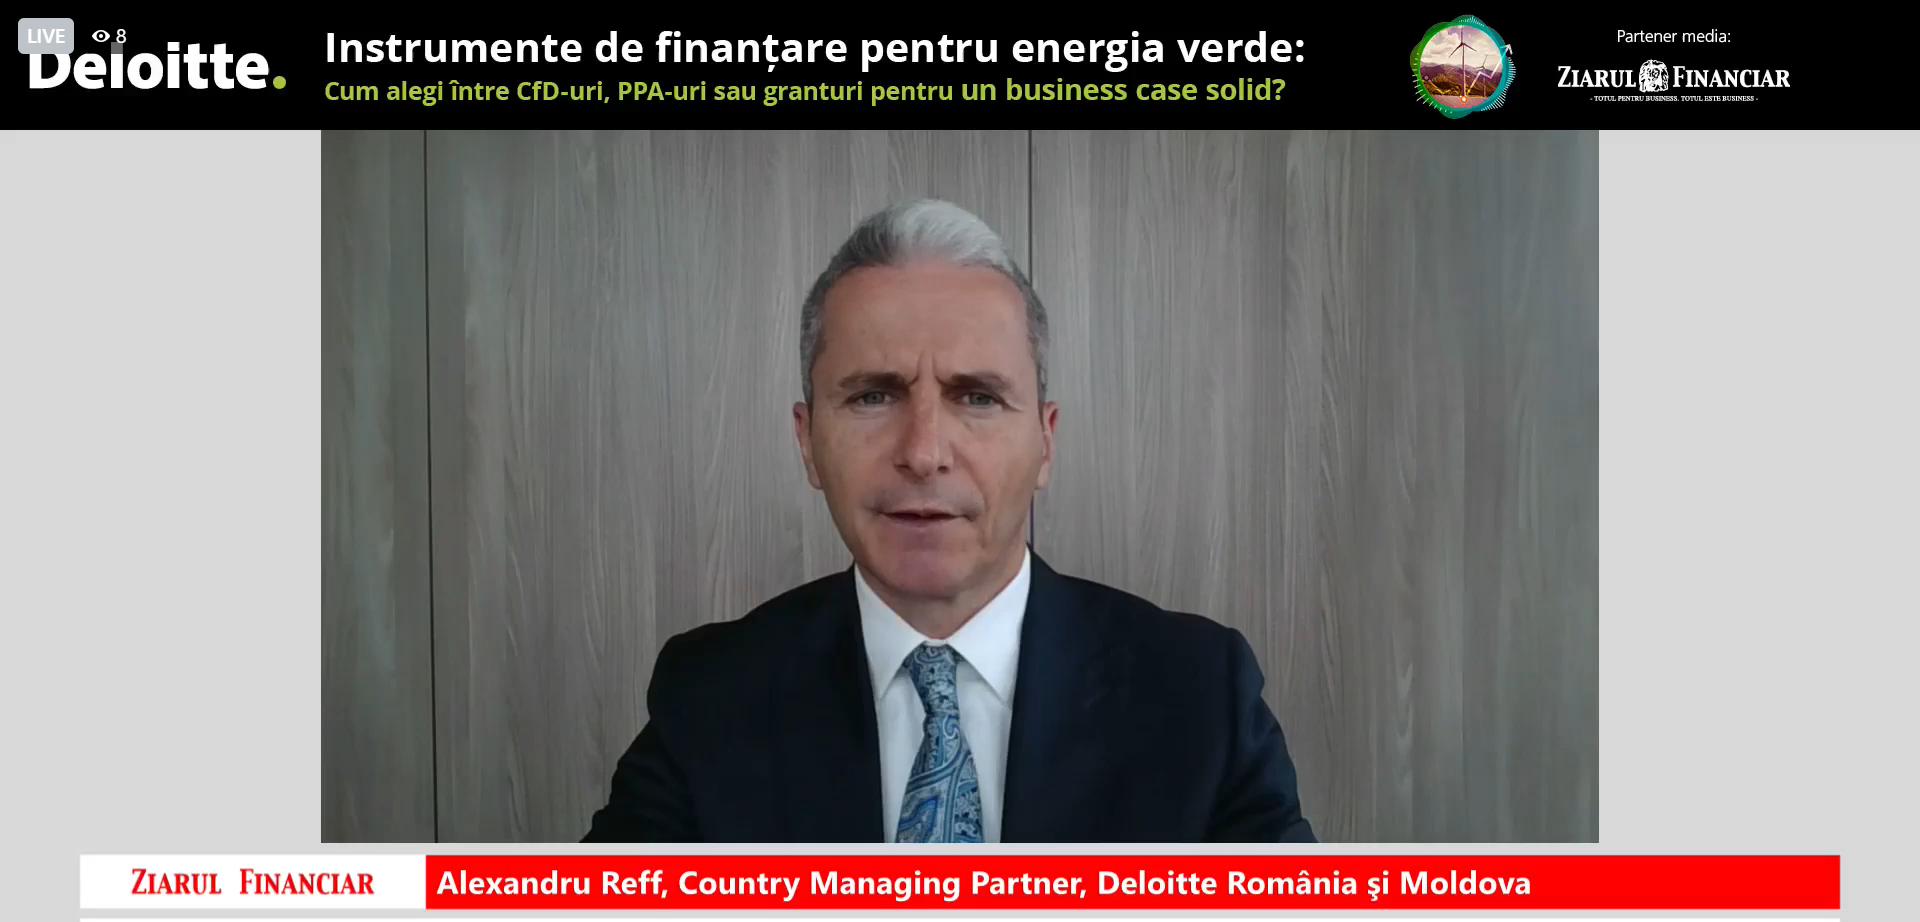 Alexandru Reff, Deloitte România: Este clar că trebuie să accelerăm tranziţia energetică, în principal cu ajutorul PNRR şi a Fondului de Modernizare. Este necesar să vorbim despre legislaţia privind contractele pentru diferenţă, despre blocajul transferului de garanţii de origine, esenţiale pentru tranziţia sustenabilă 